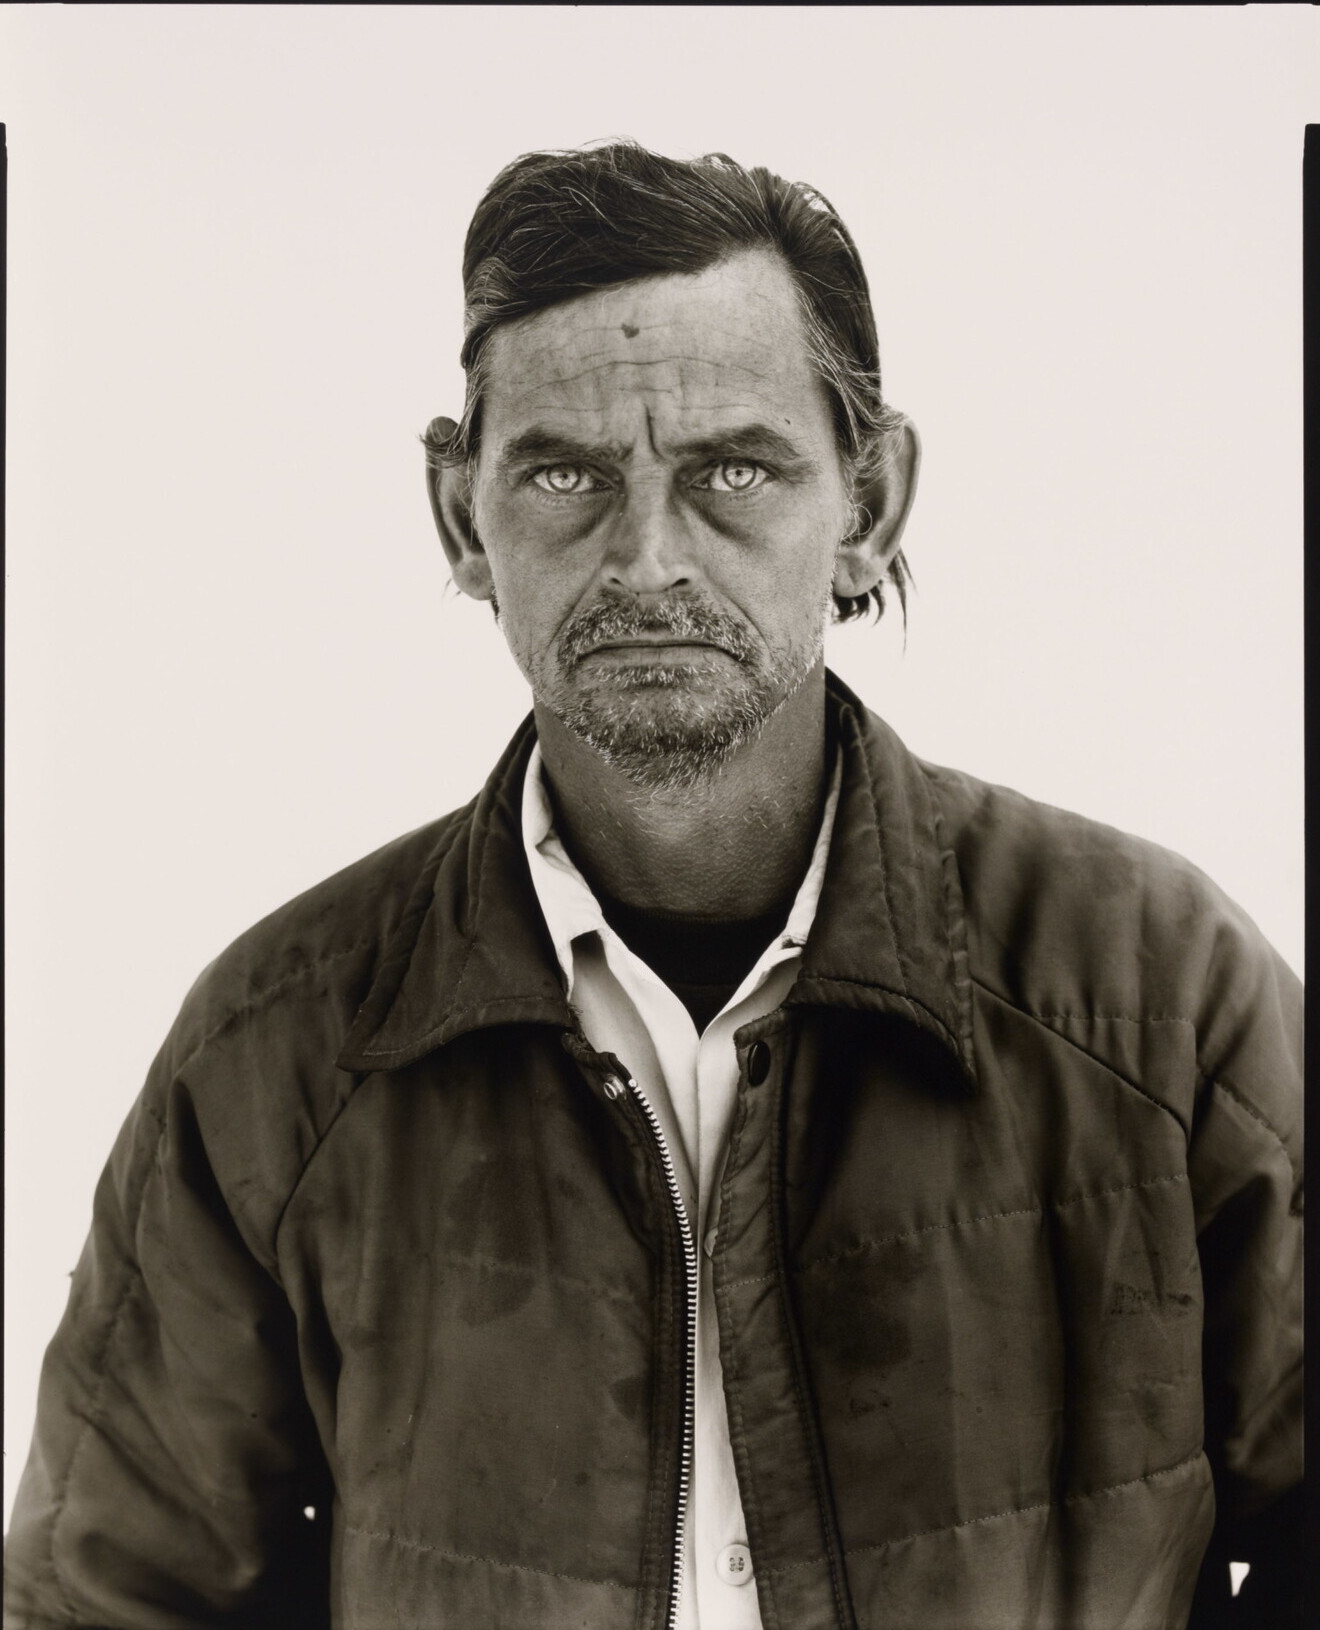 Клиффорд Фельднер, безработный работник ранчо, Голден, Колорадо, 1983 г. Фотограф Ричард Аведон